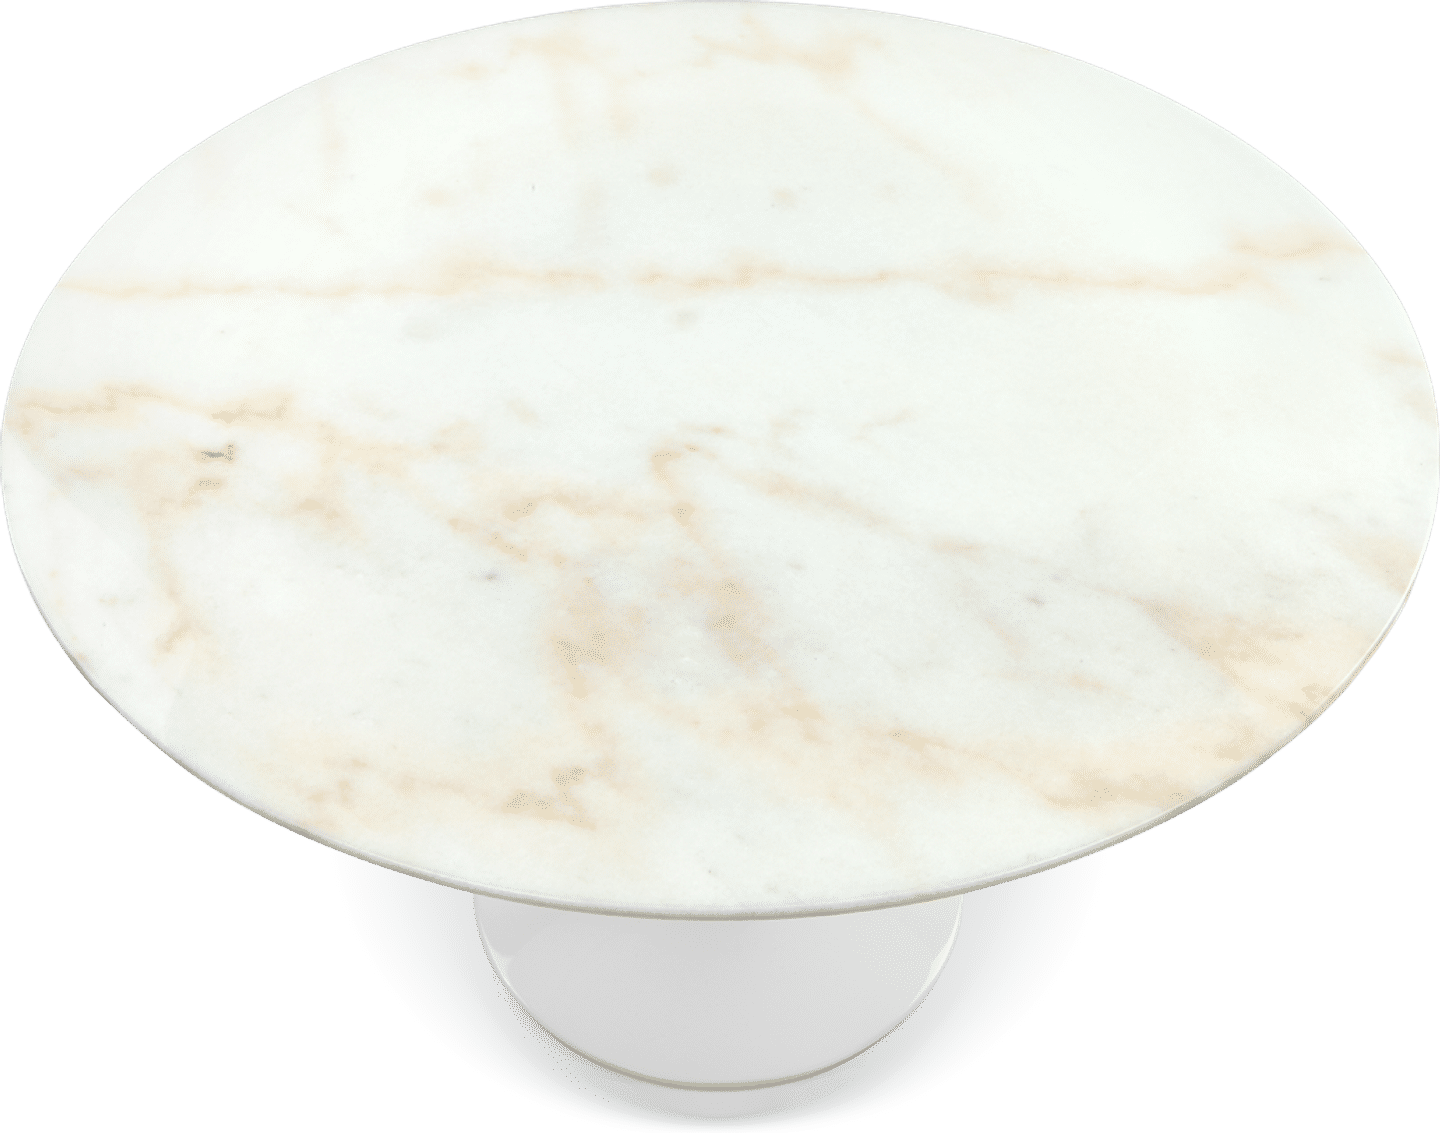 Tulip runt matbord - vit marmor White Marble/90 CM image.